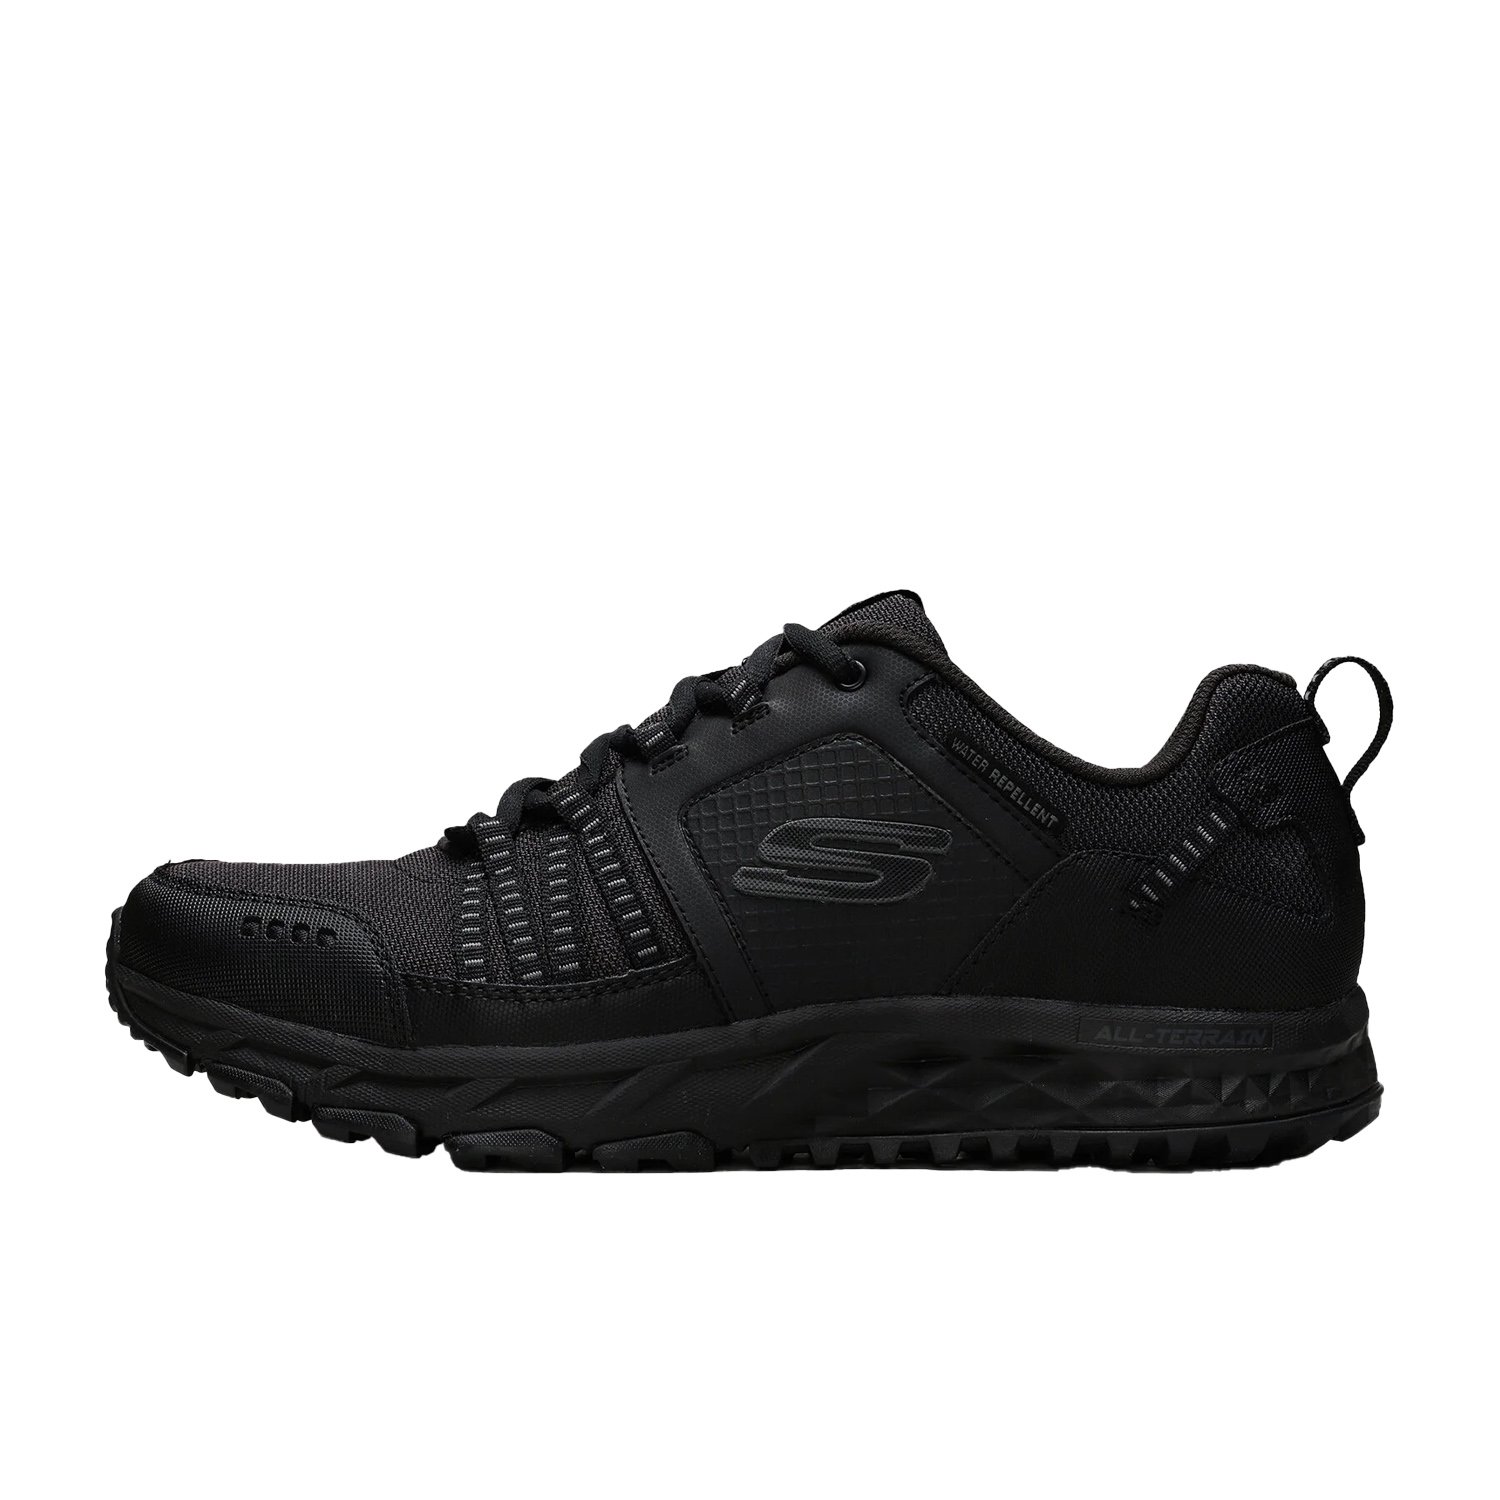 Skechers Escape Plan Erkek Yürüyüş Ayakkabısı - Siyah - 1